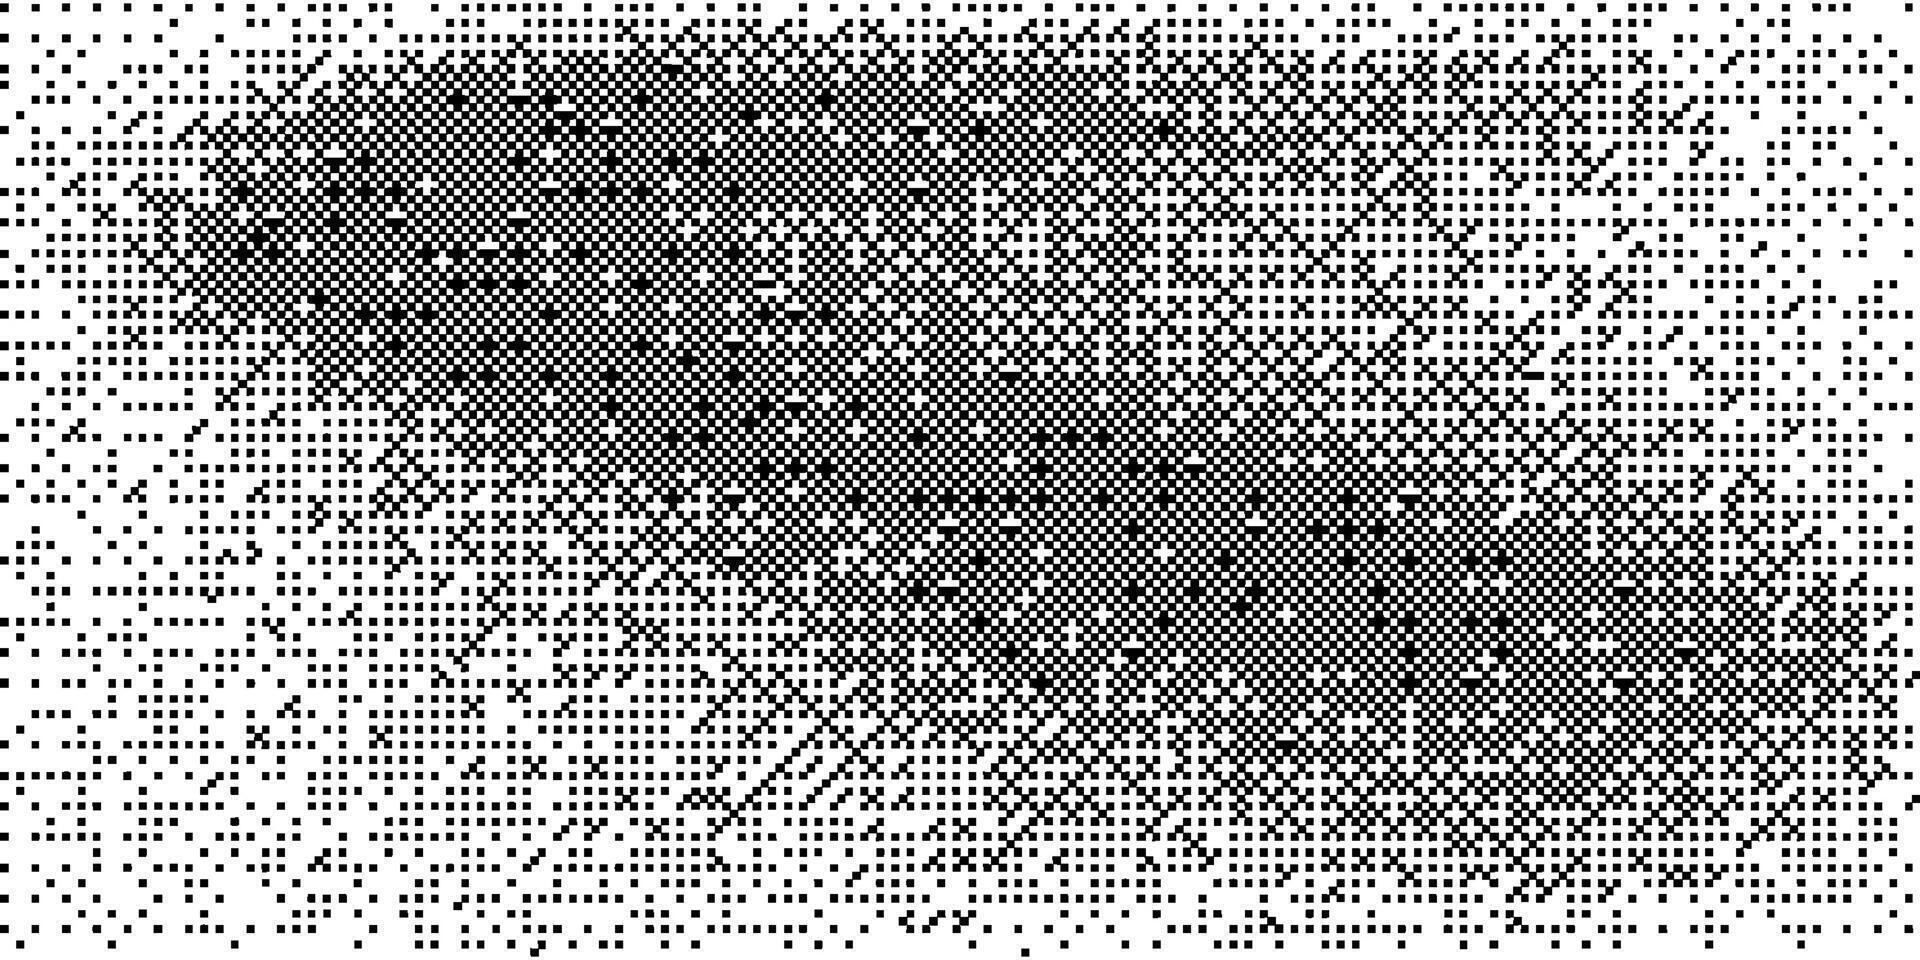 halftone vervaagd helling korrelig textuur. grunge halftone bitmap achtergrond. wit en zwart plein zand lawaai behang. retro dronken backdrop vector